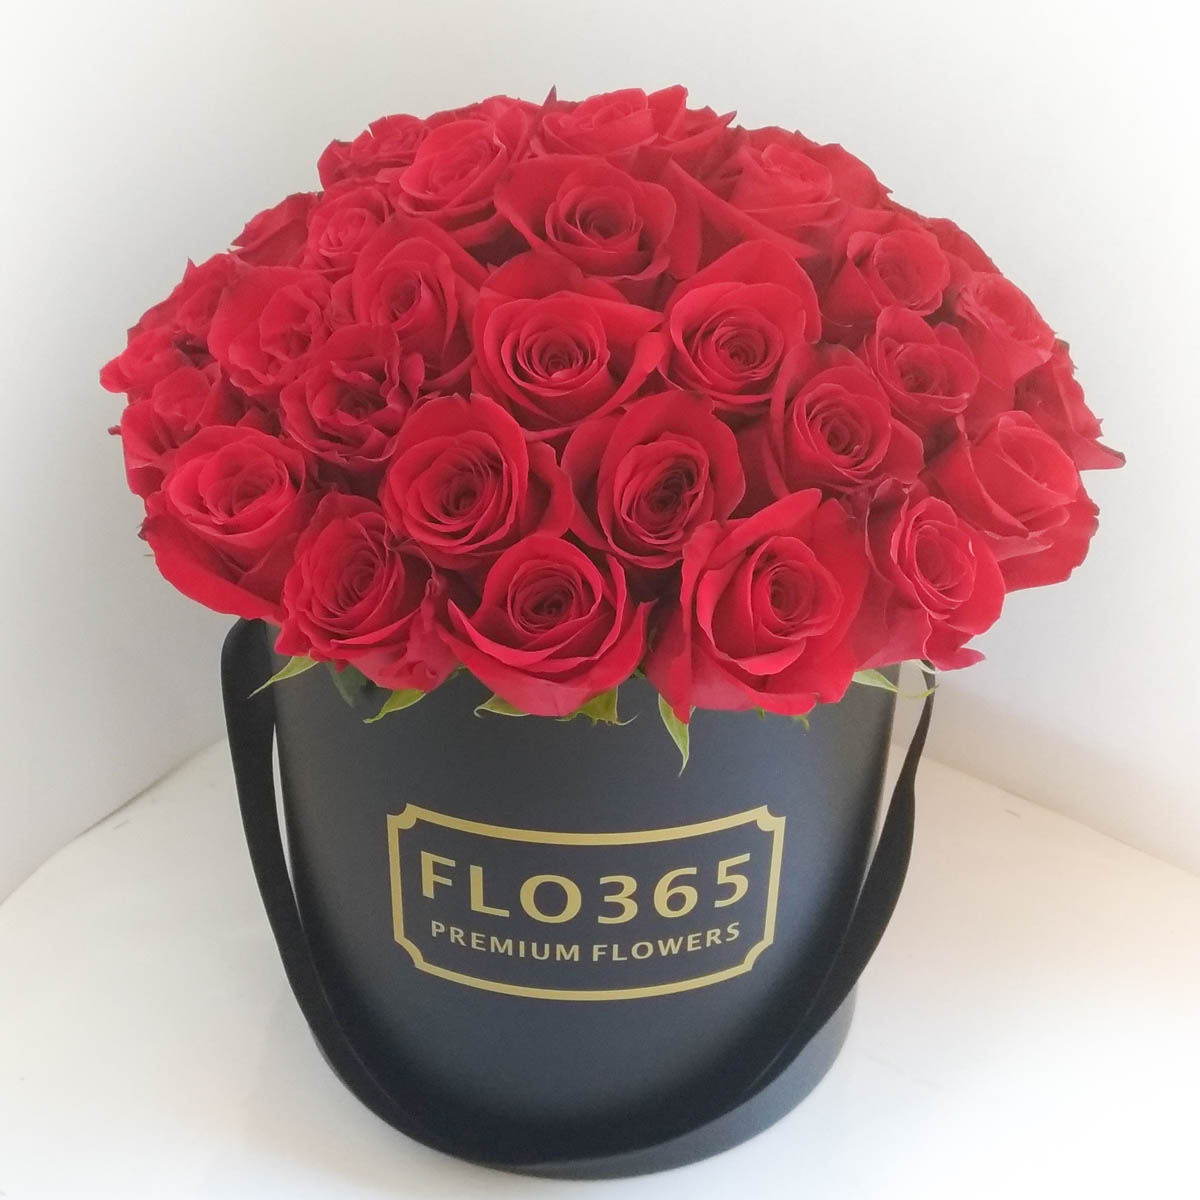 LUXURY! 51 красная роза в шляпной коробке - Фотография цветов перед доставкой 4